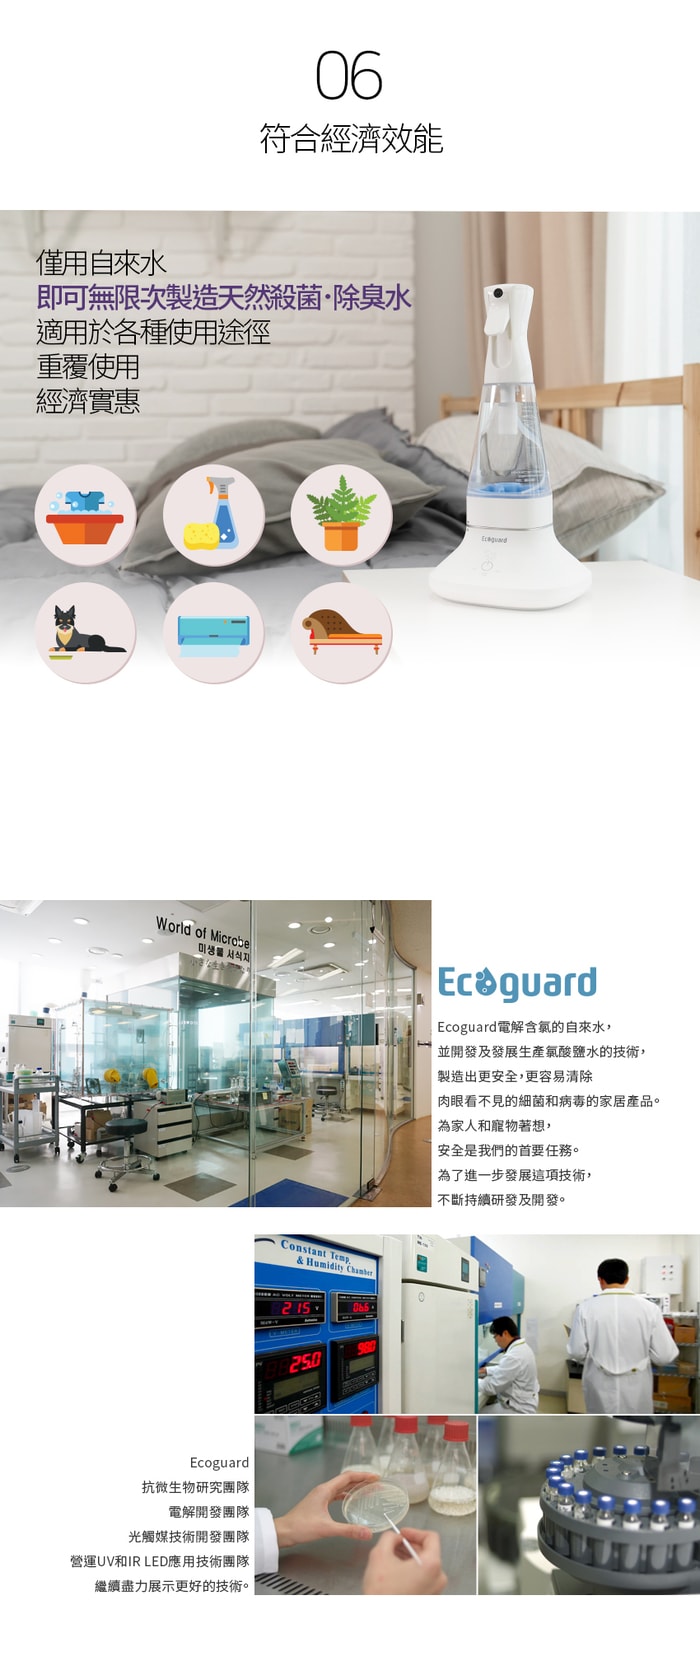 韓國 Ecoguard 次氯酸水製造機12